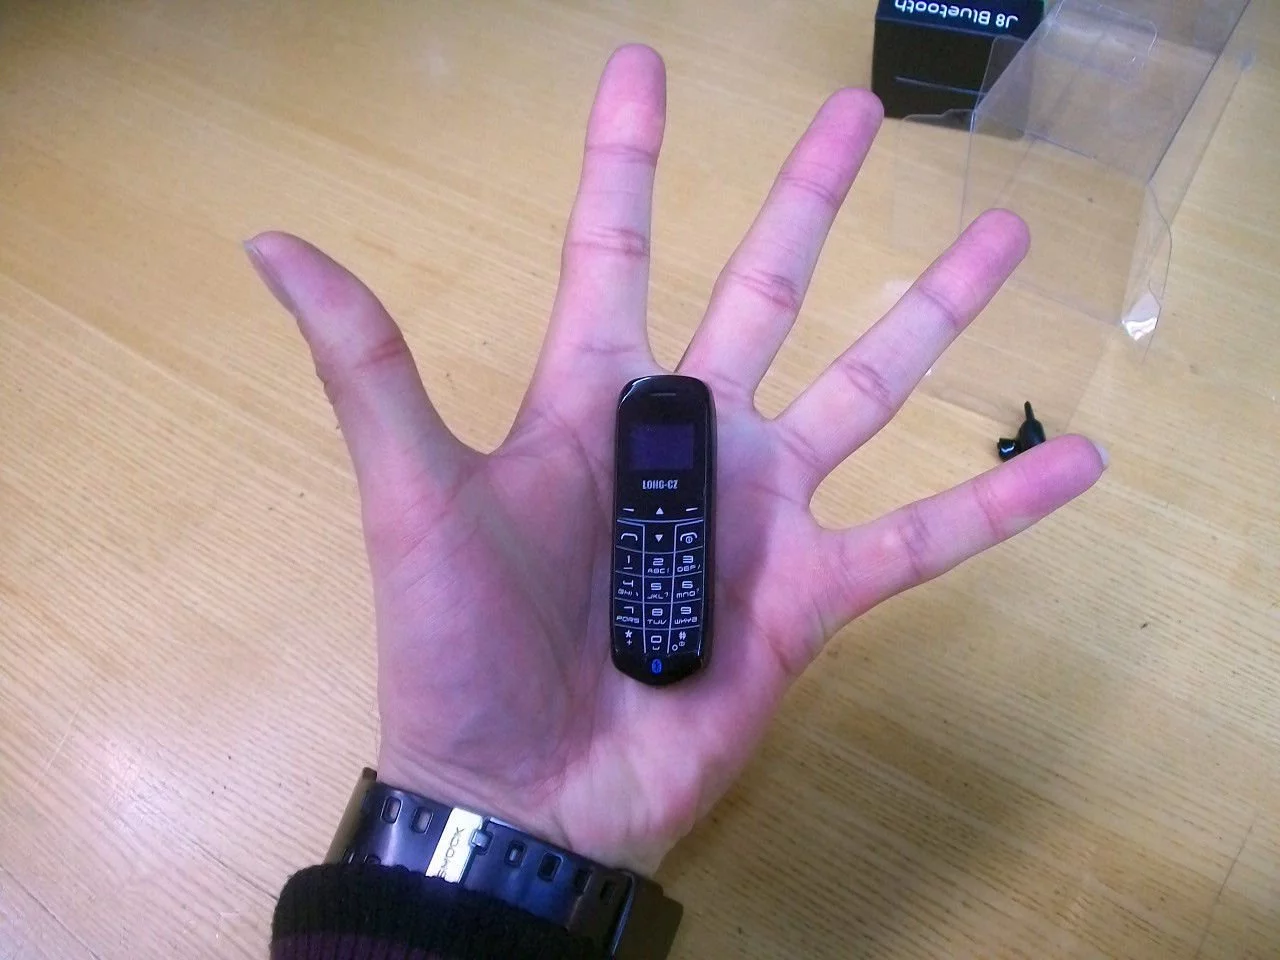 Фотография маленького телефона. Маленький телефон. Маленький сотовый телефон. Самый маленький сотовый телефон. Самый маленький смартфон.